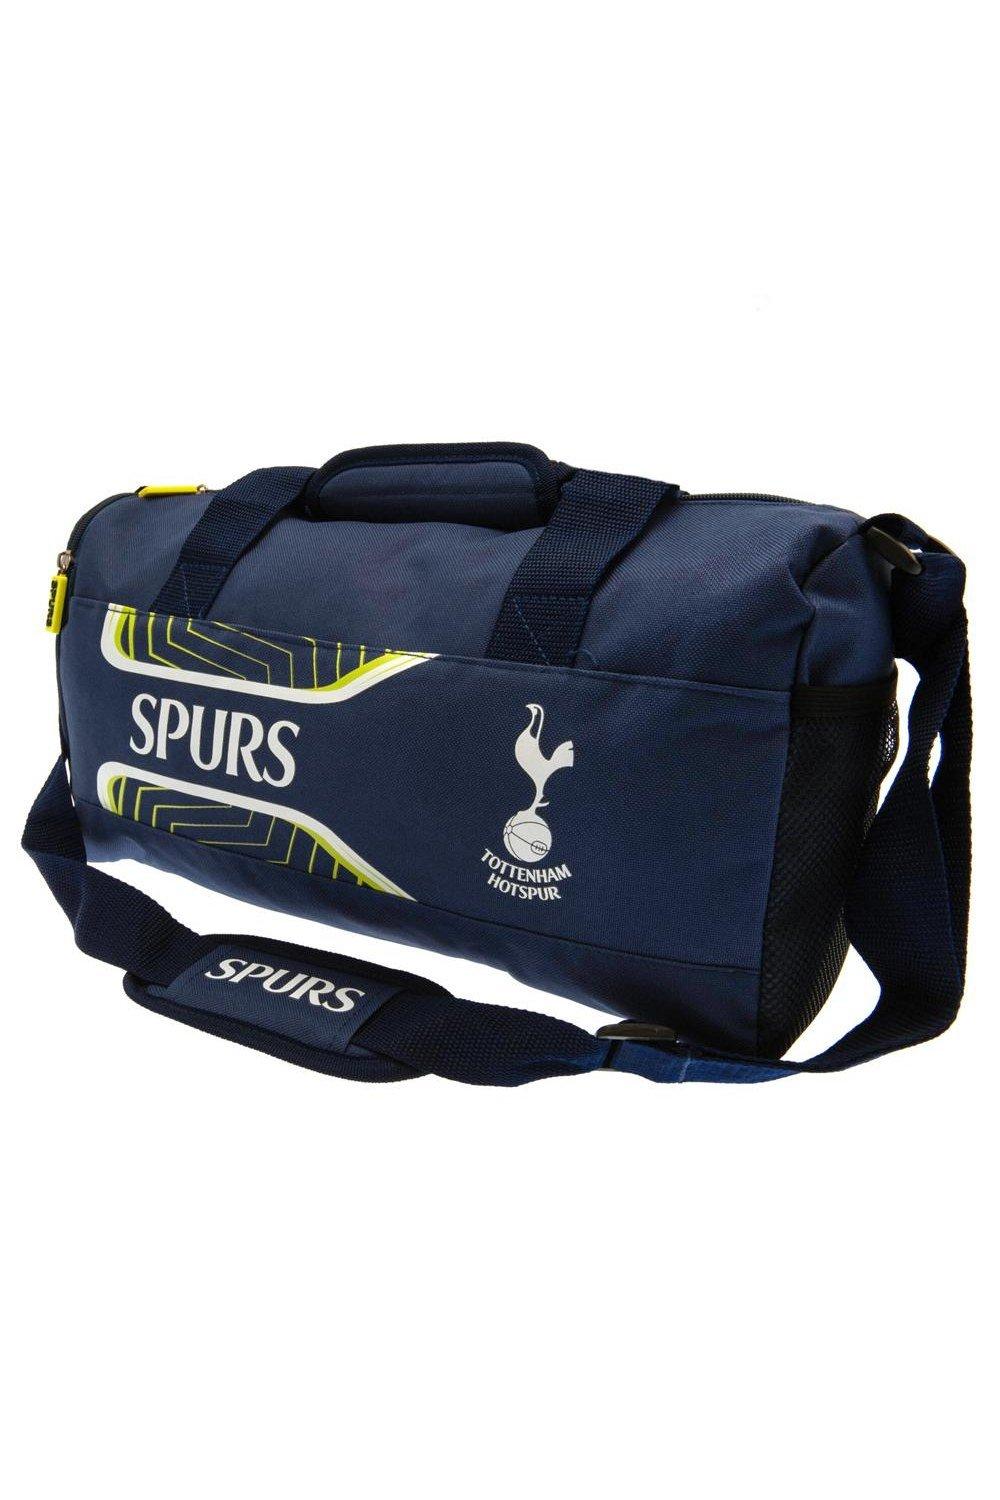 Спортивная сумка Flash Tottenham Hotspur FC, темно-синий аксессуар для грилей tima пм3638 подставка на мангал 36 38см высота 15 20см